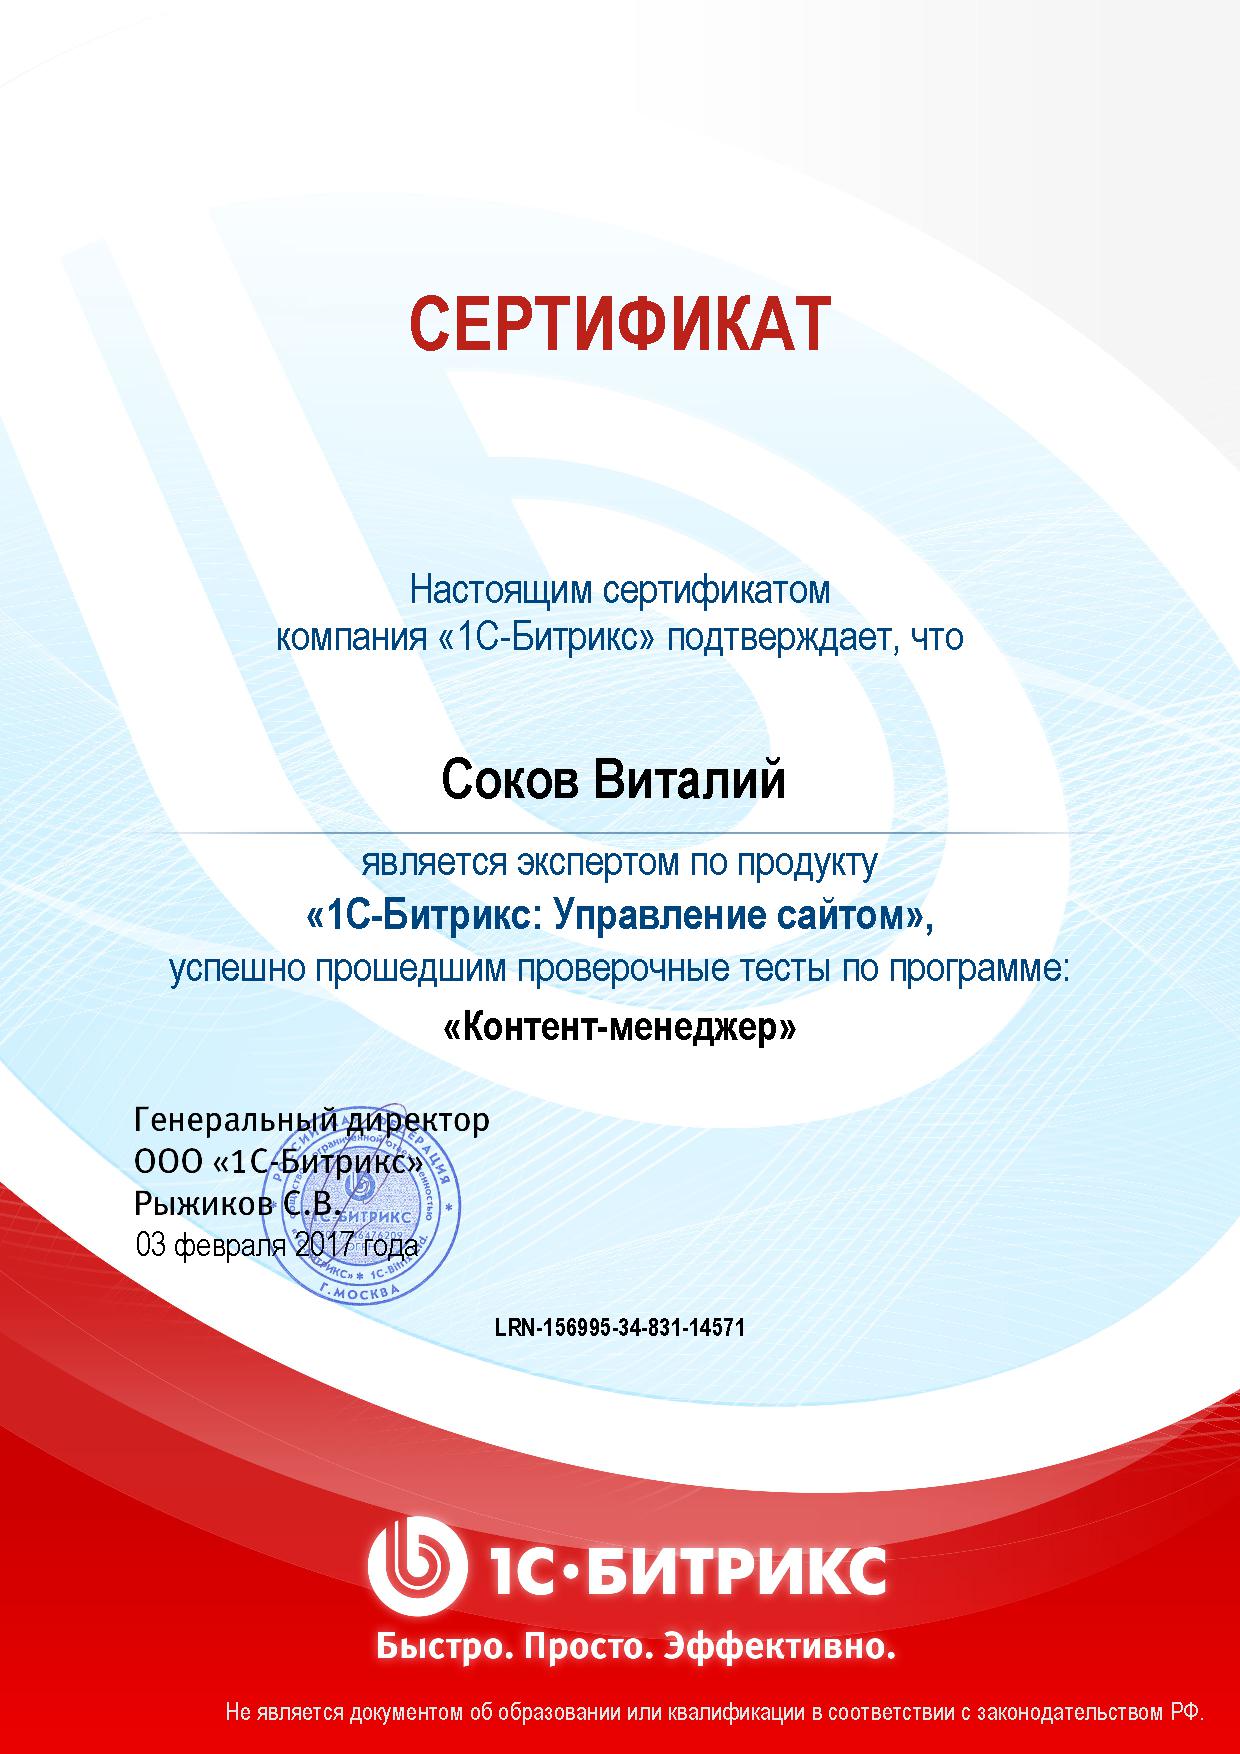 Сертификат Соков В.М., курс "1С-Битрикс: Управление сайтом. Контент-менеджер"